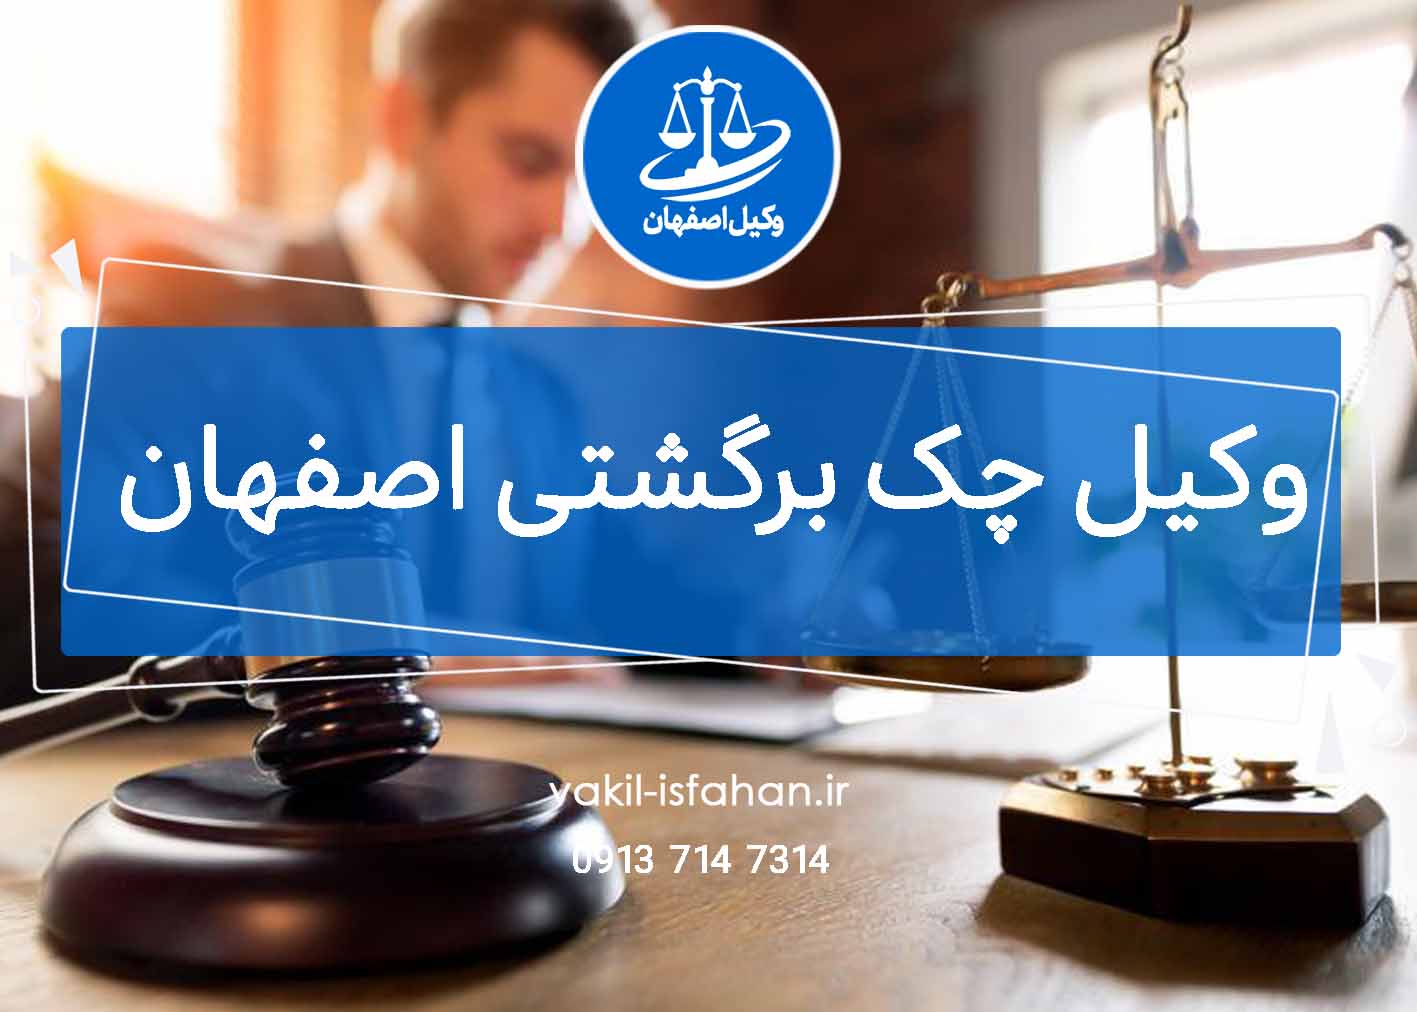 وکیل چک برگشتی اصفهان